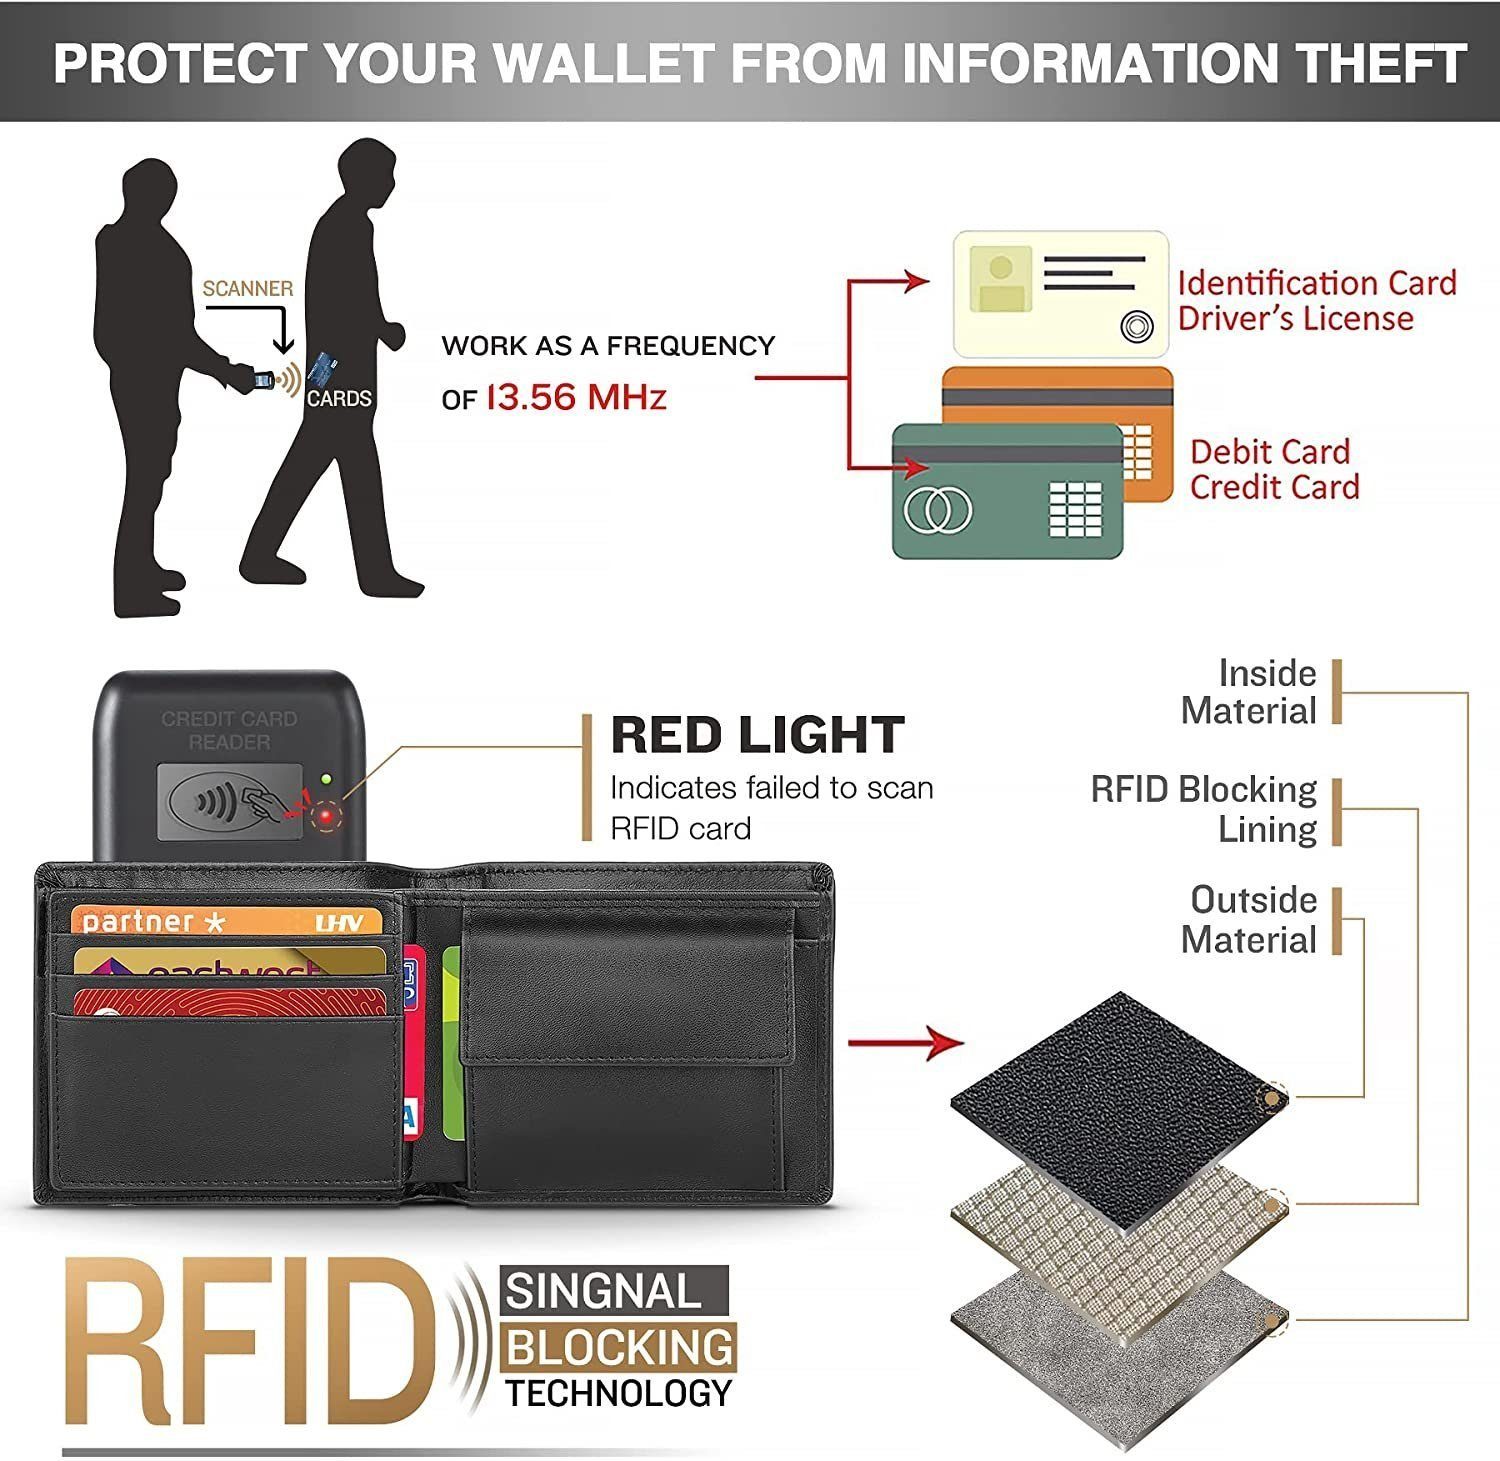 Geldbörse Herrenmode Herrengeldbörse Portemonnaie schwarzen aus Leder, aus Leder. TEEHON RFID reinem